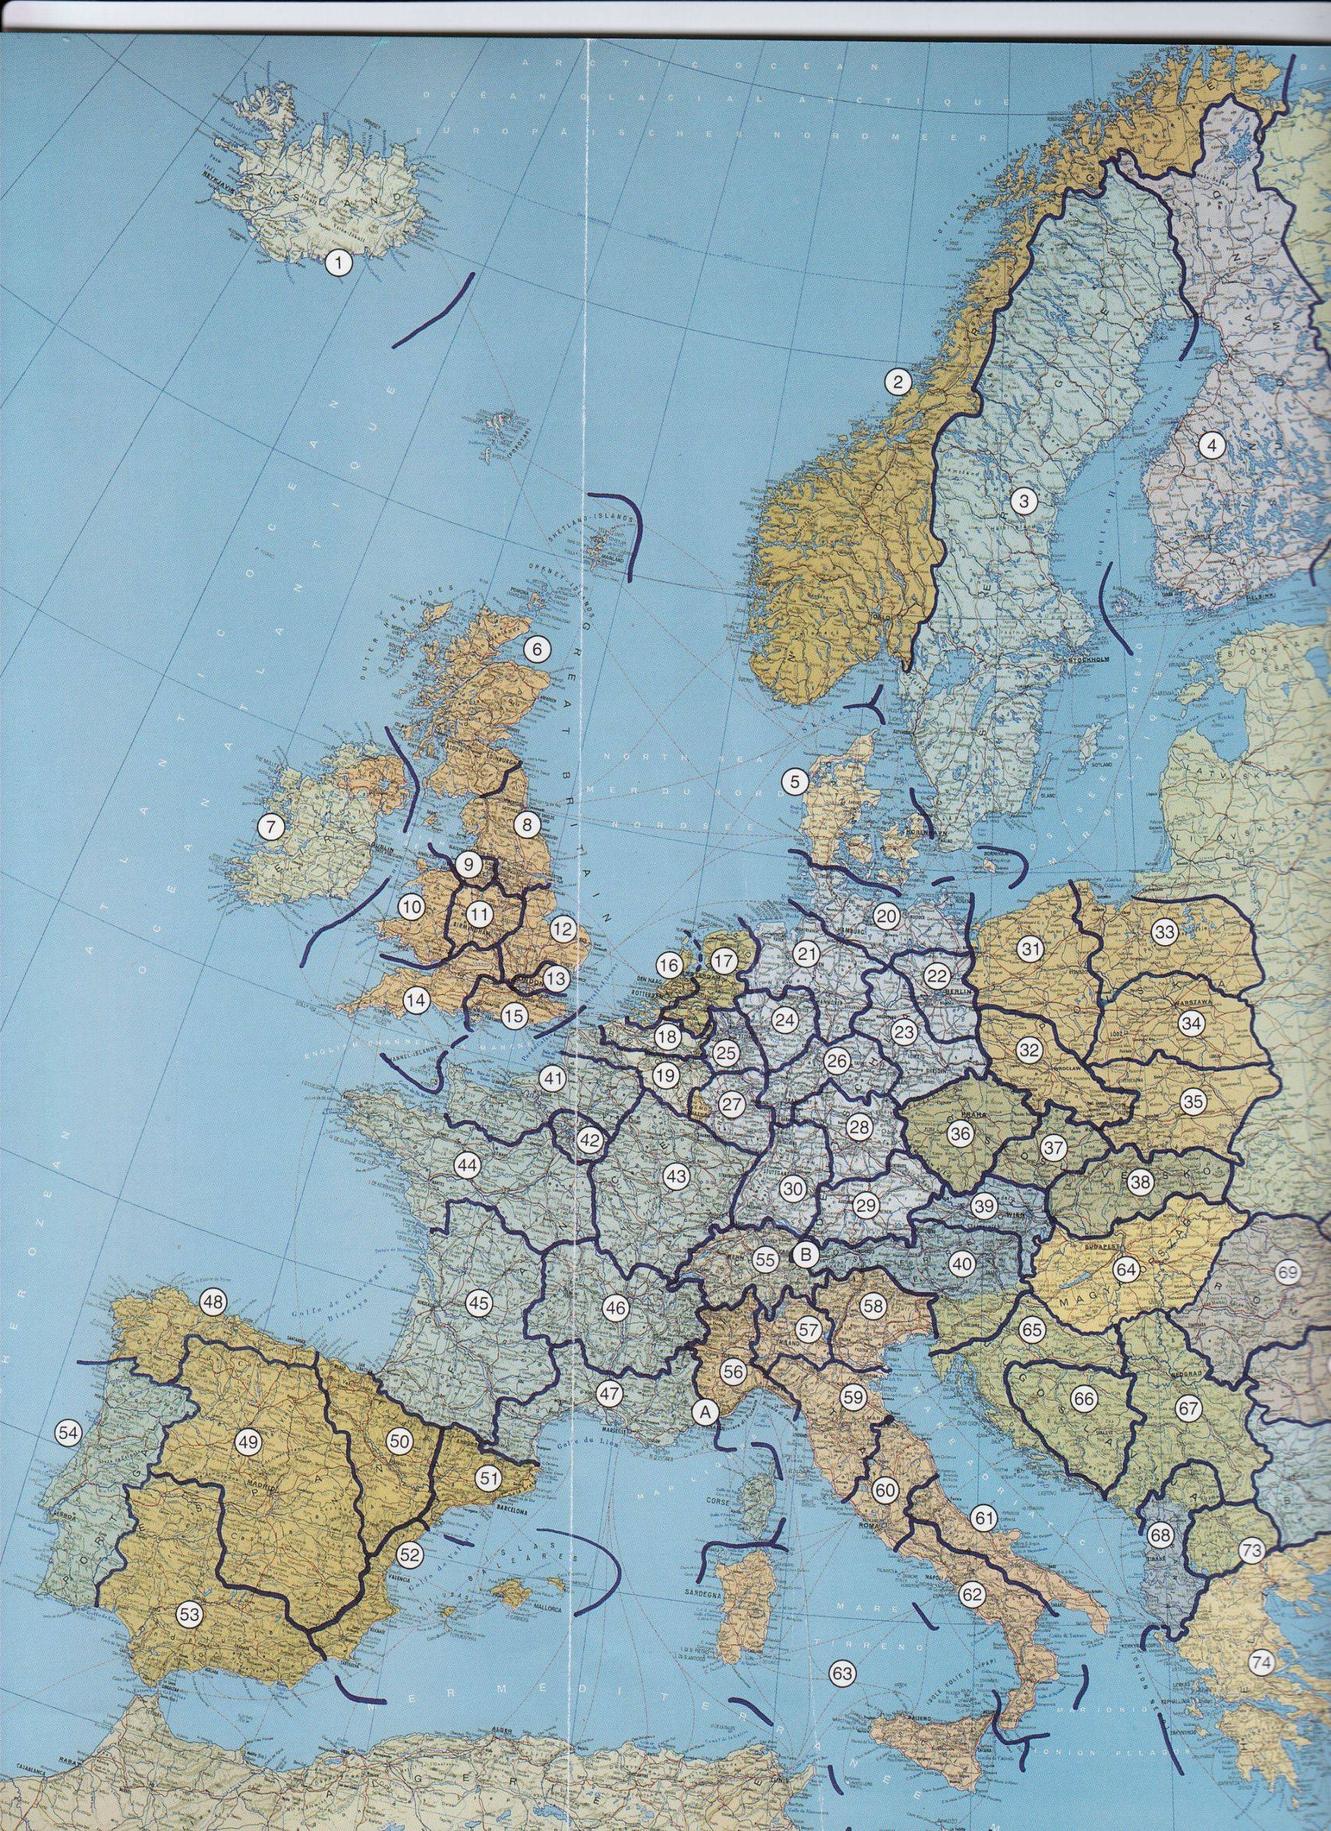 Eurotopia - Stany Zjednoczone Europy wg koncepcji Heinekena